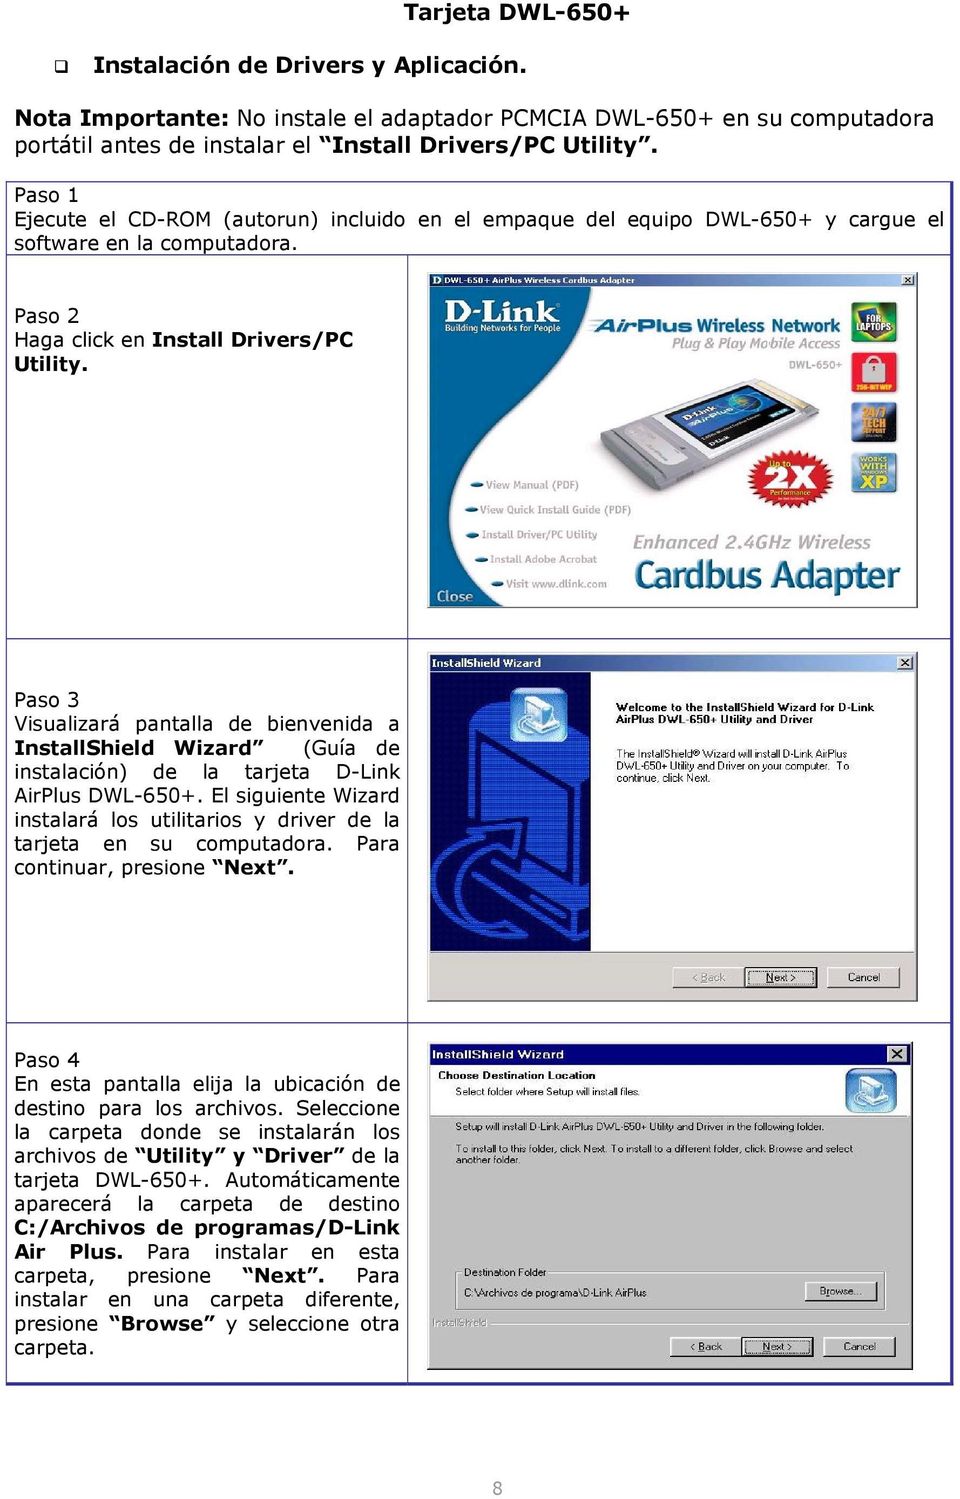 Paso 3 Visualizará pantalla de bienvenida a InstallShield Wizard (Guía de instalación) de la tarjeta D-Link AirPlus DWL-650+.